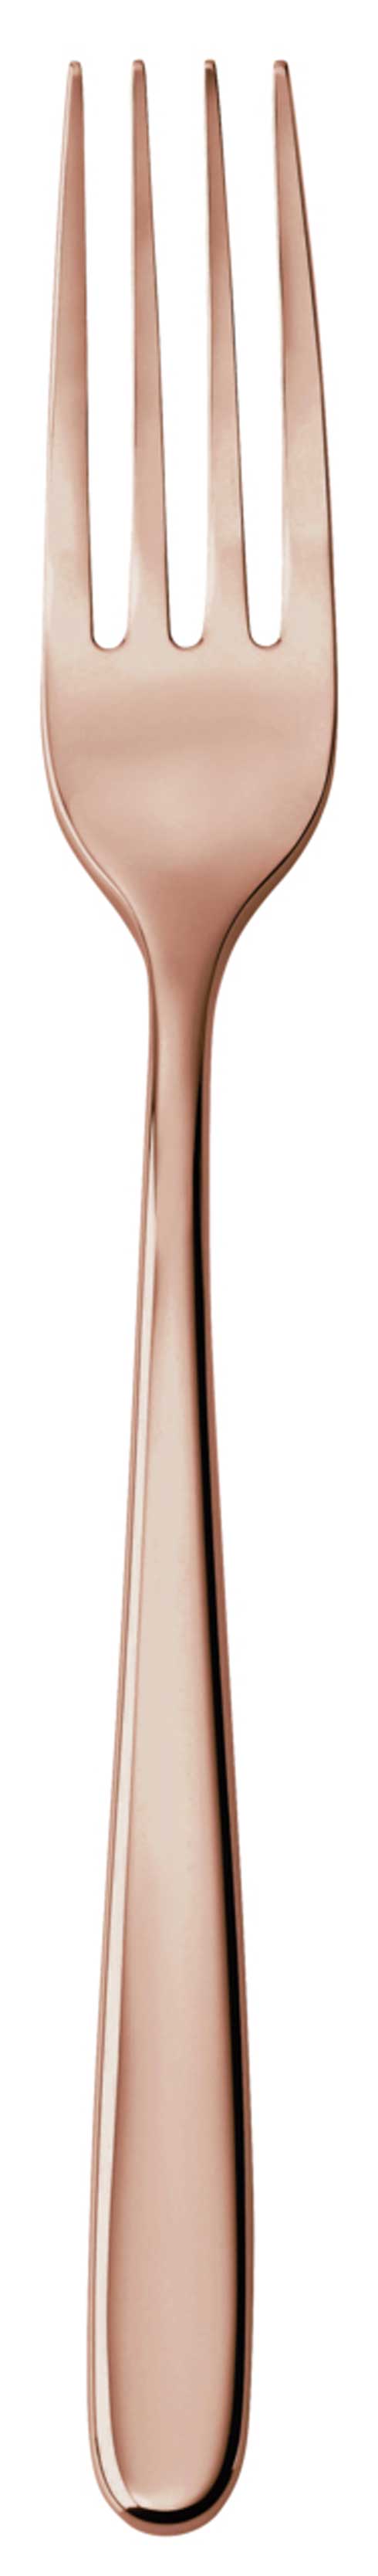 $57.00 Copper - Serving Fork 18/10 s/s - PVD Mirror Copper